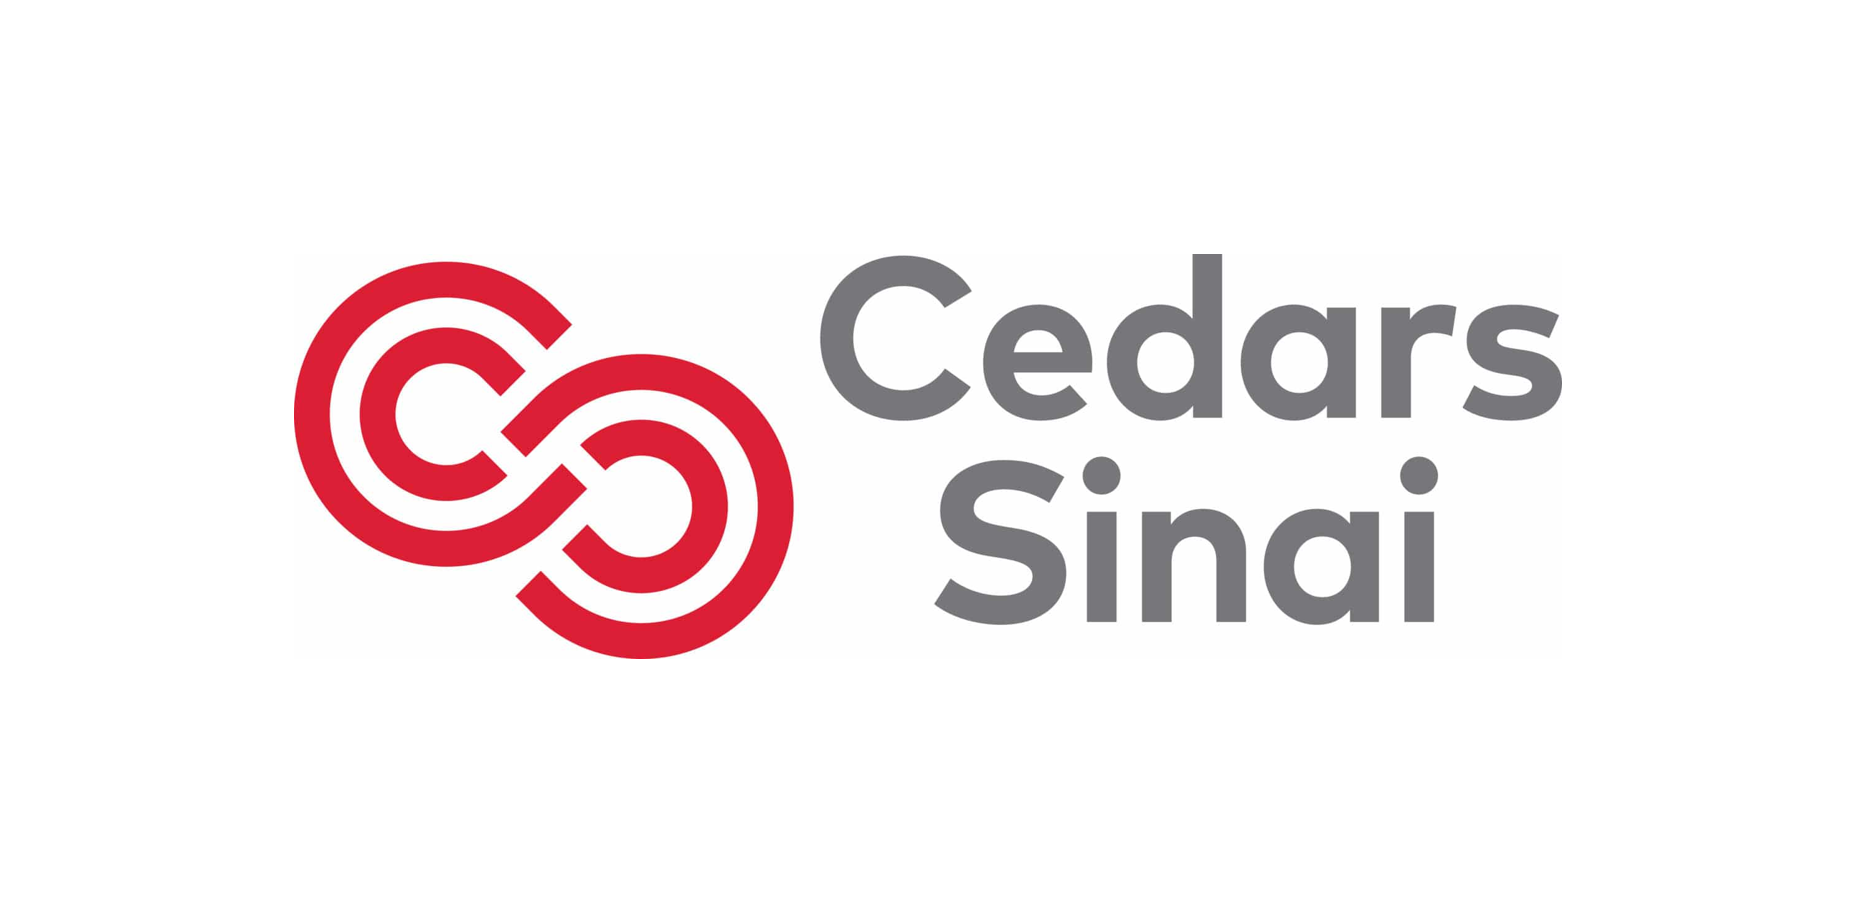 Cedars-Sinai backs Fathom